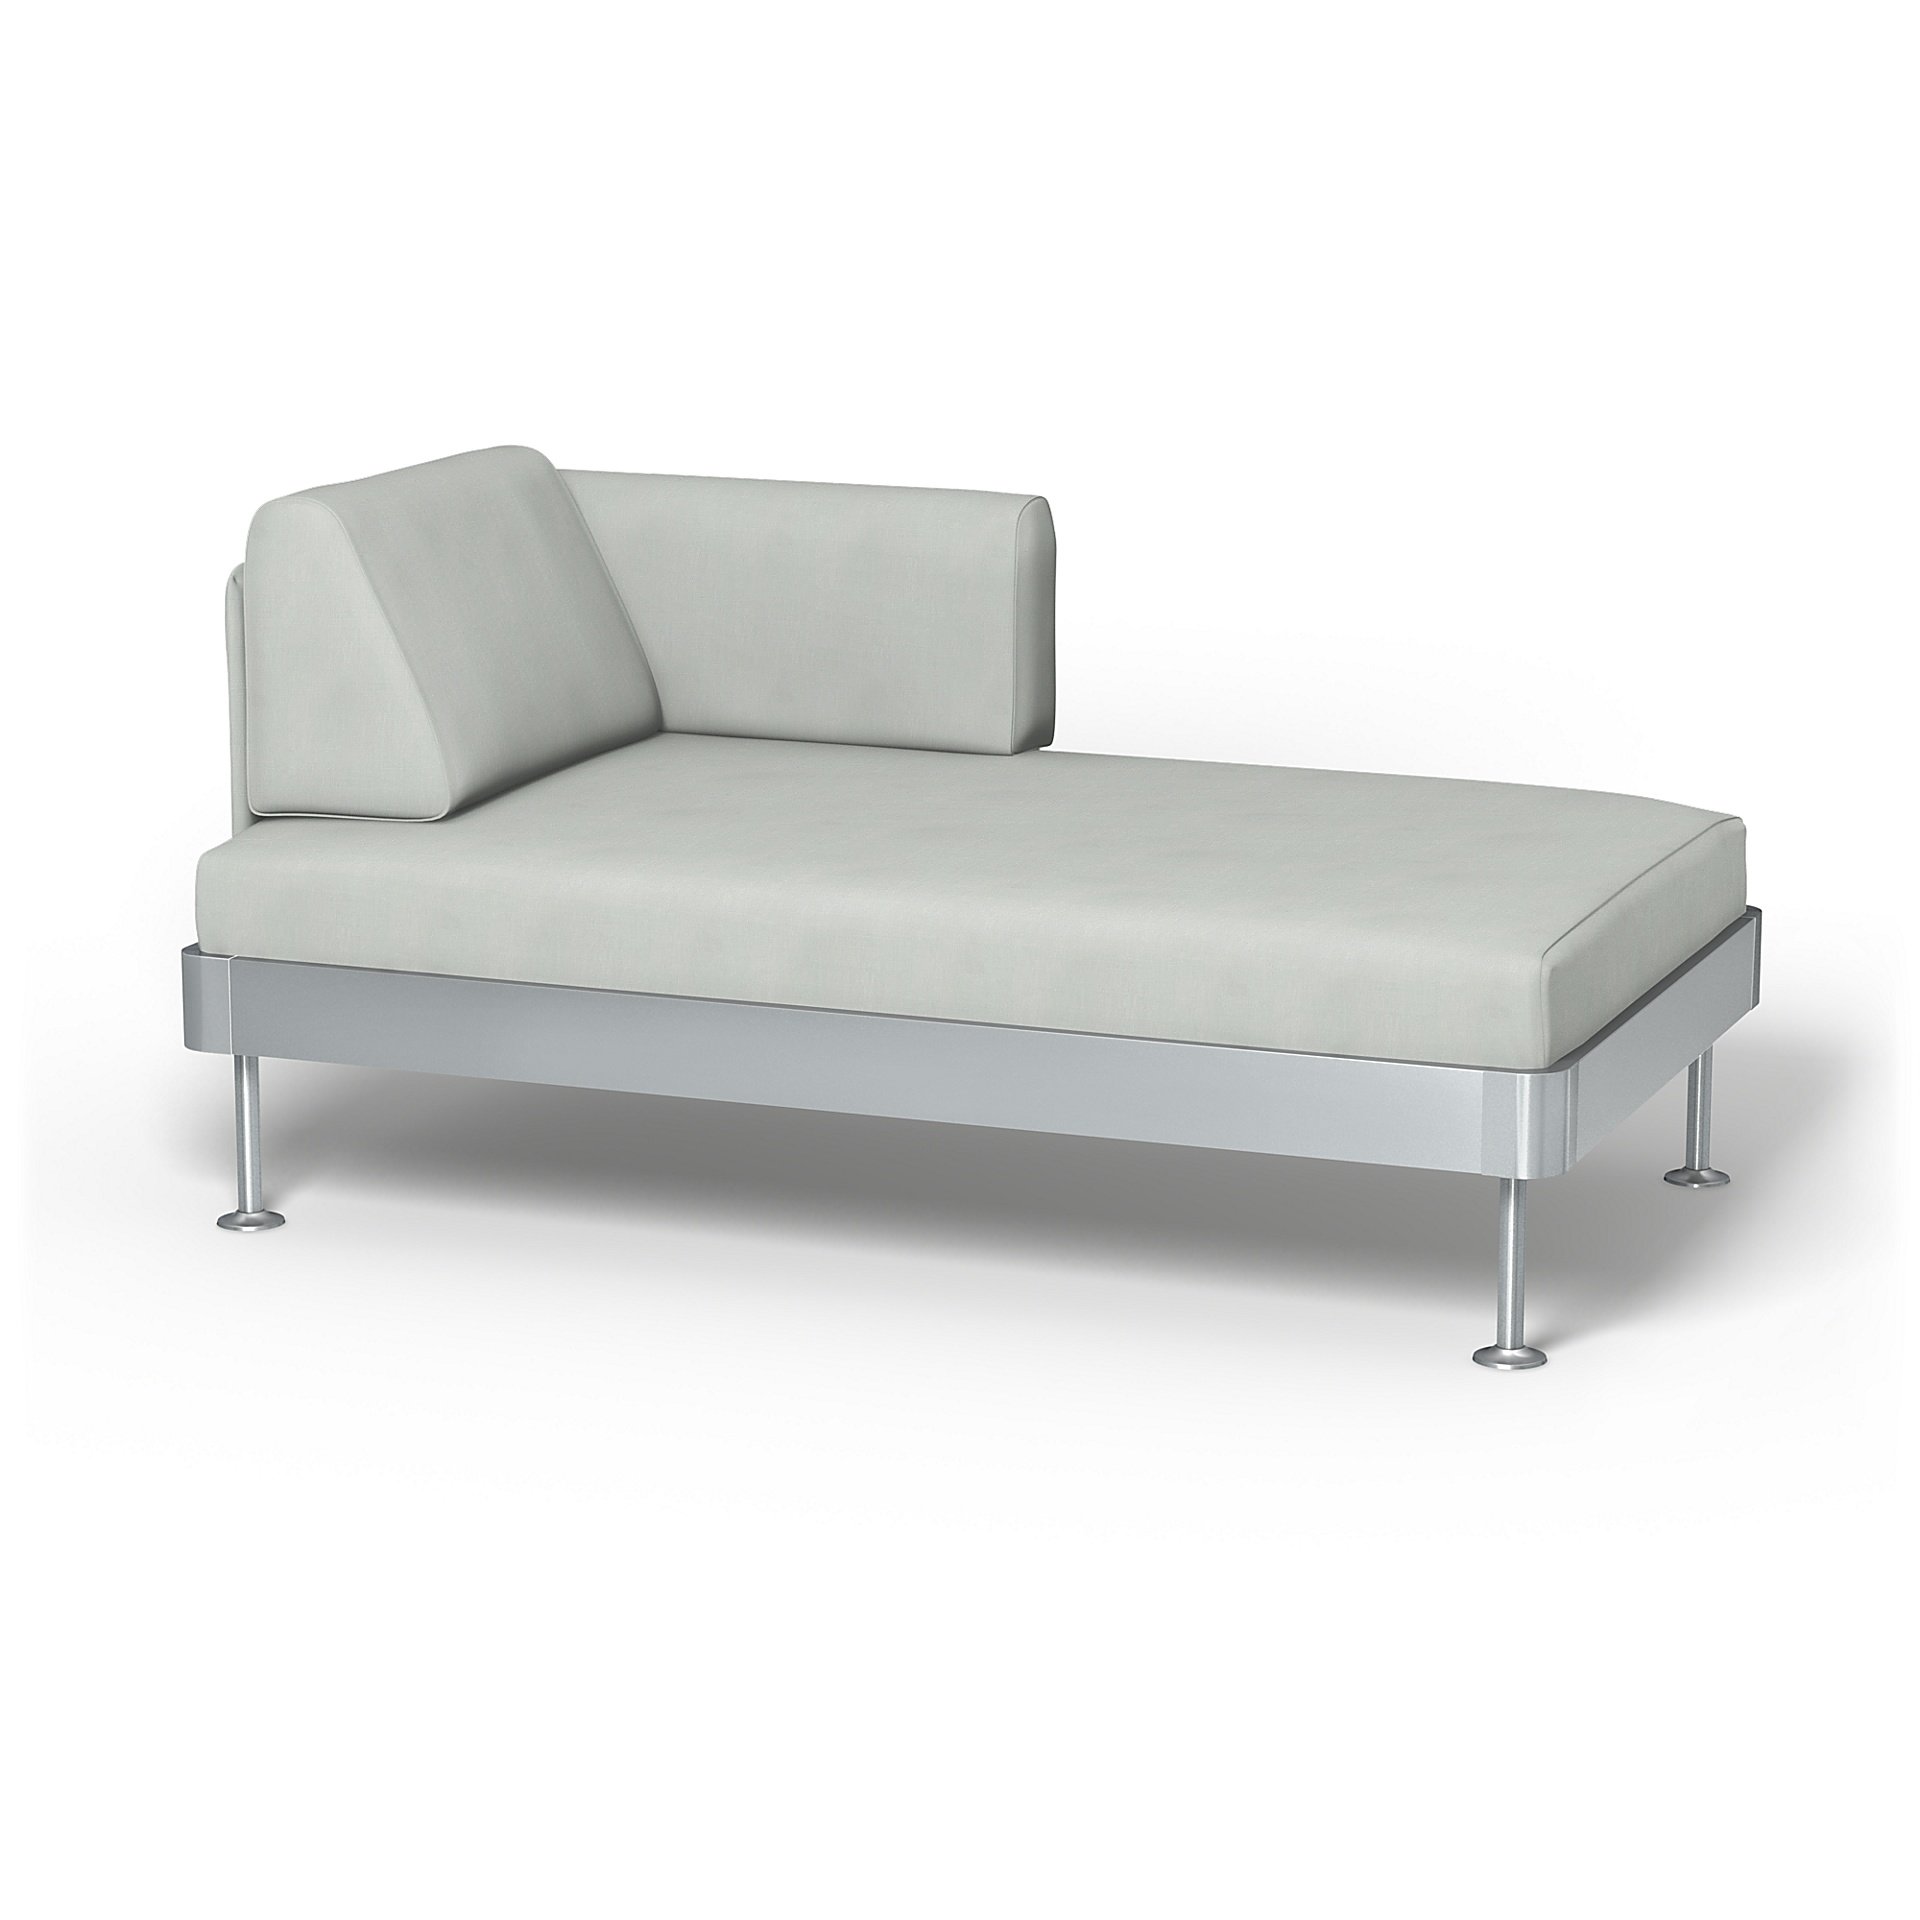 IKEA - Delaktig Chaise Longue Cover, Silver Grey, Linen - Bemz